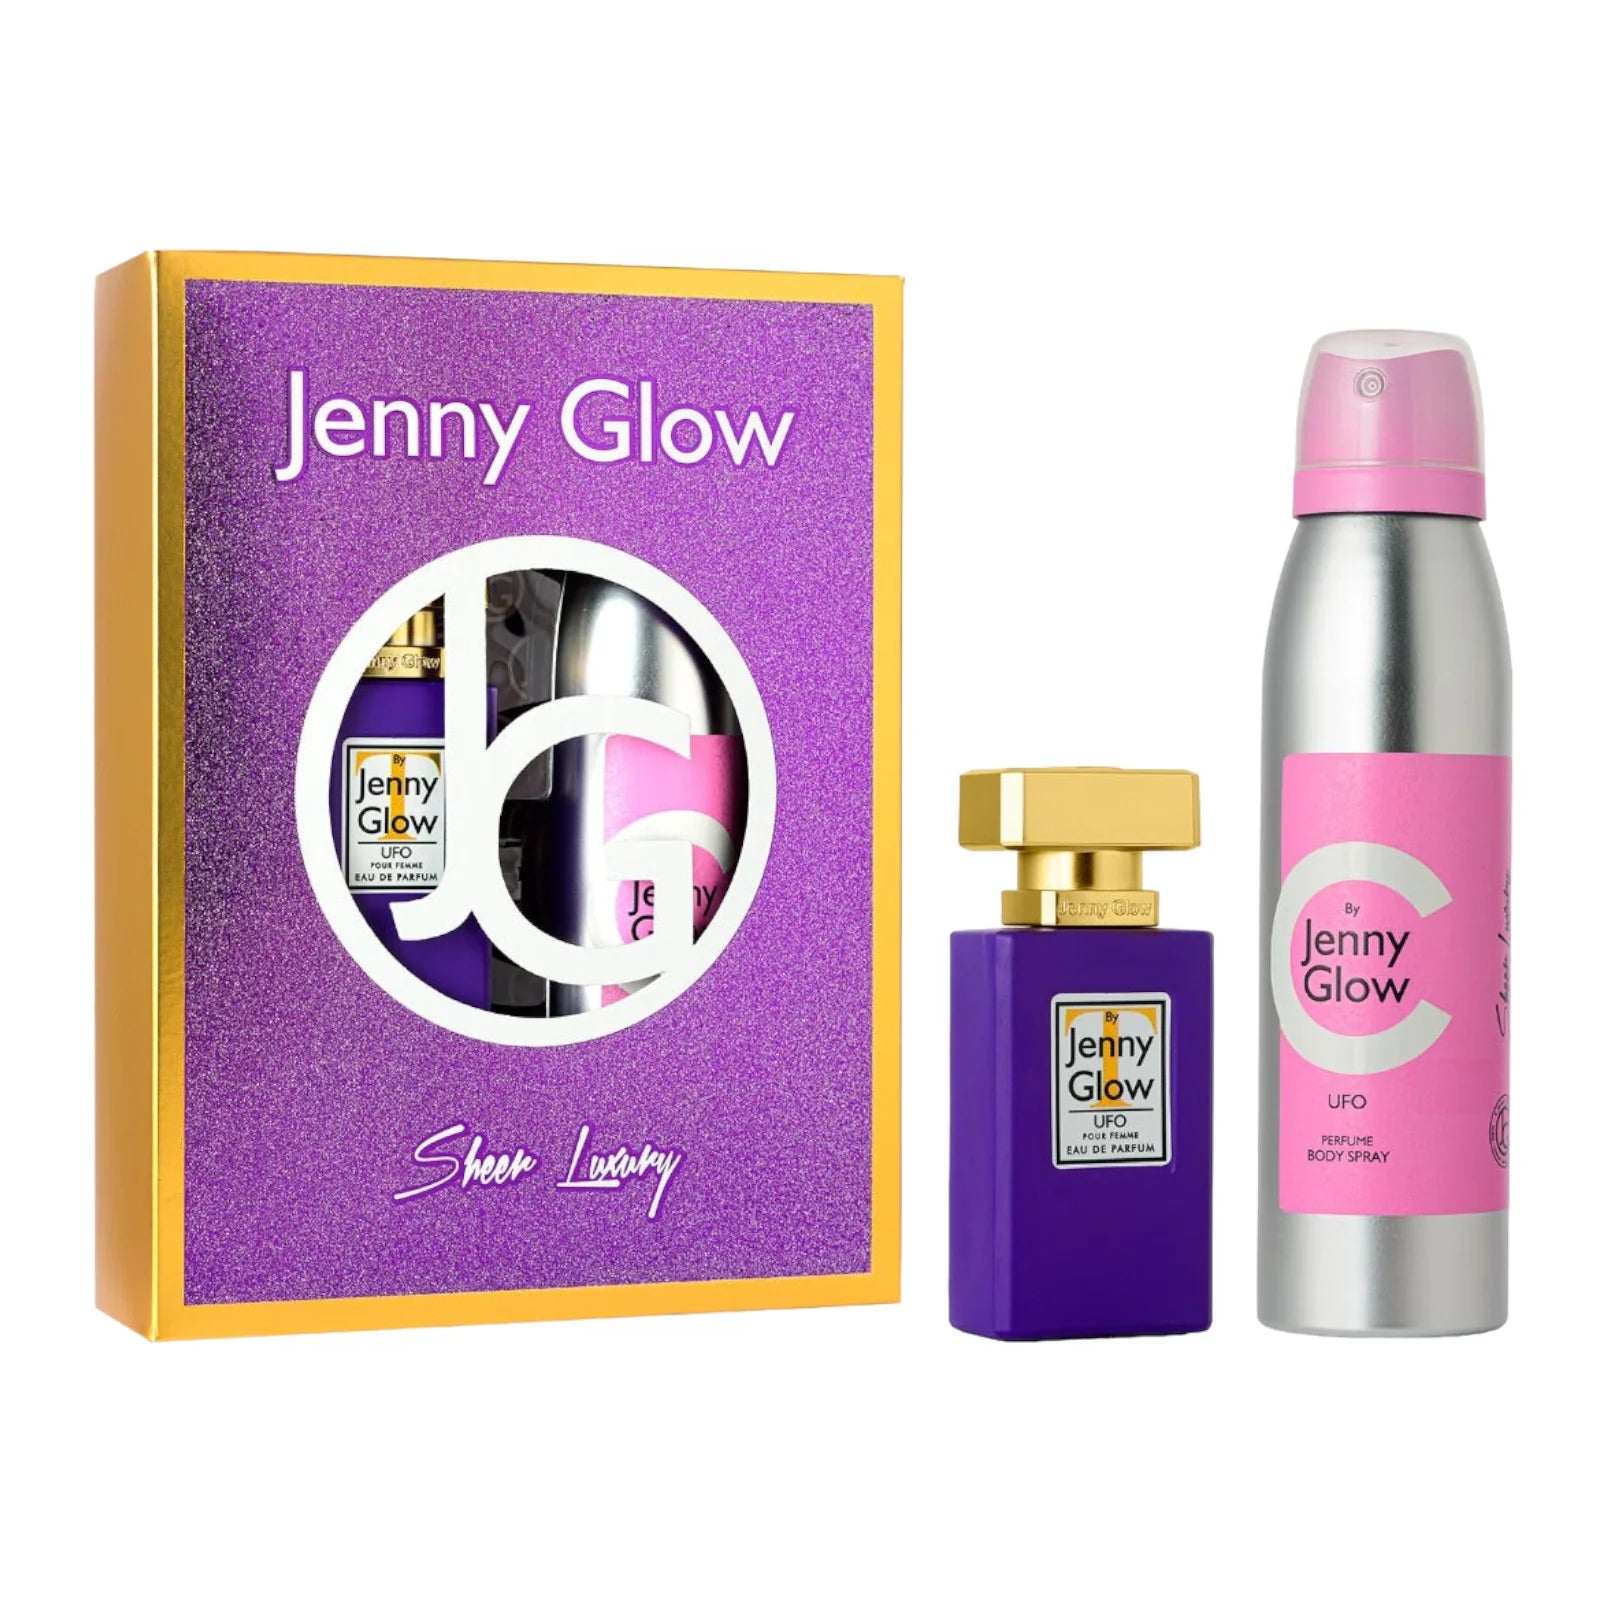 Jenny Glow Perfume & Body Spray Gift Set - UFO